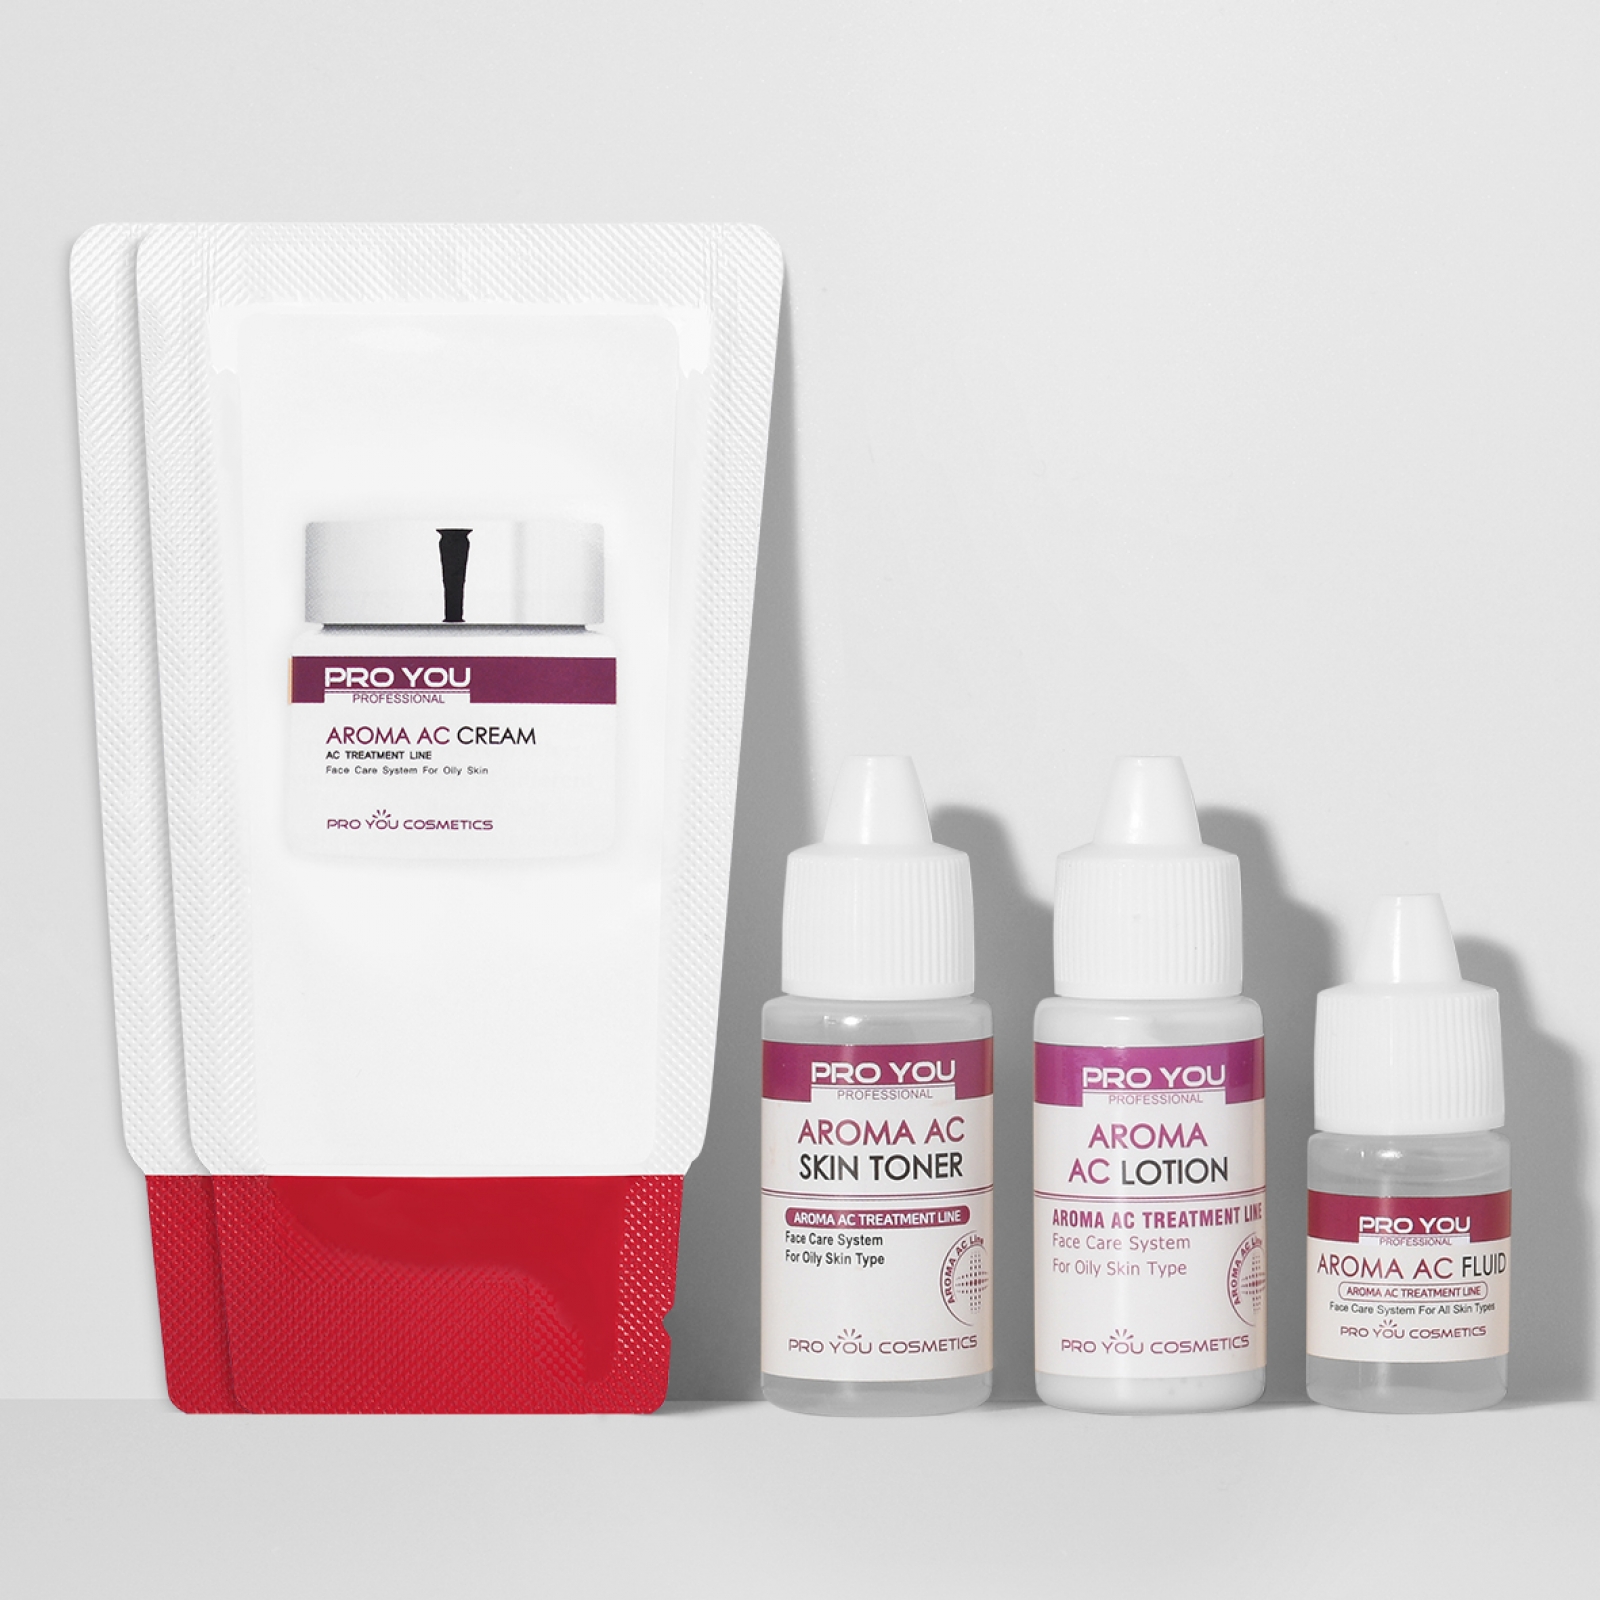 Дорожный мини-набор профессиональных средств для лечения проблемной кожи Aroma AC Travel BOX от Pro You Professional